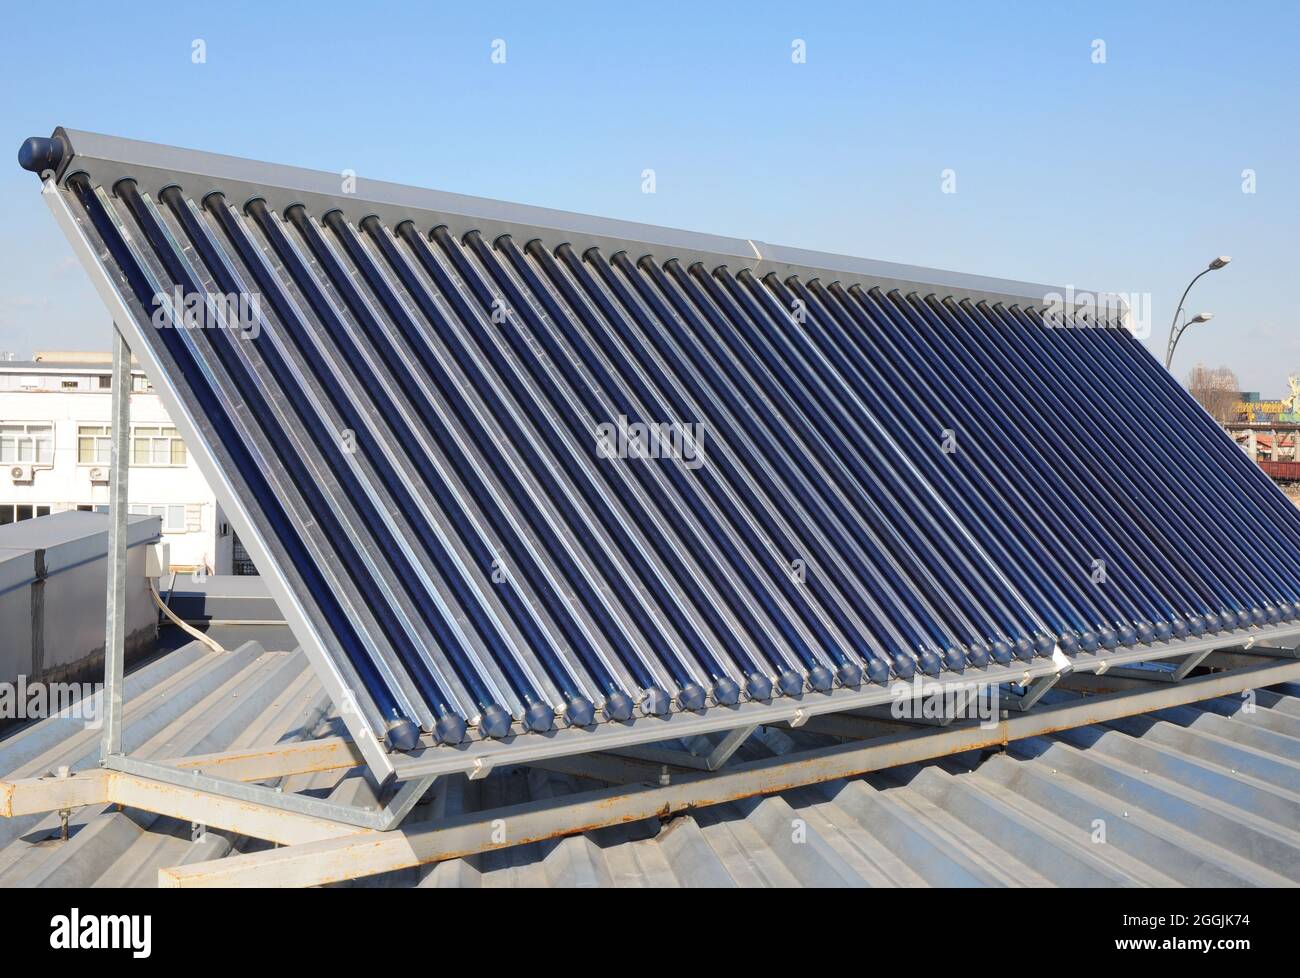 Modernes Hausdach mit Solar Water Heater, Sonnenkollektoren als Energieeffizienzlösung. Vakuum Solar Wasser Heizung System. Stockfoto